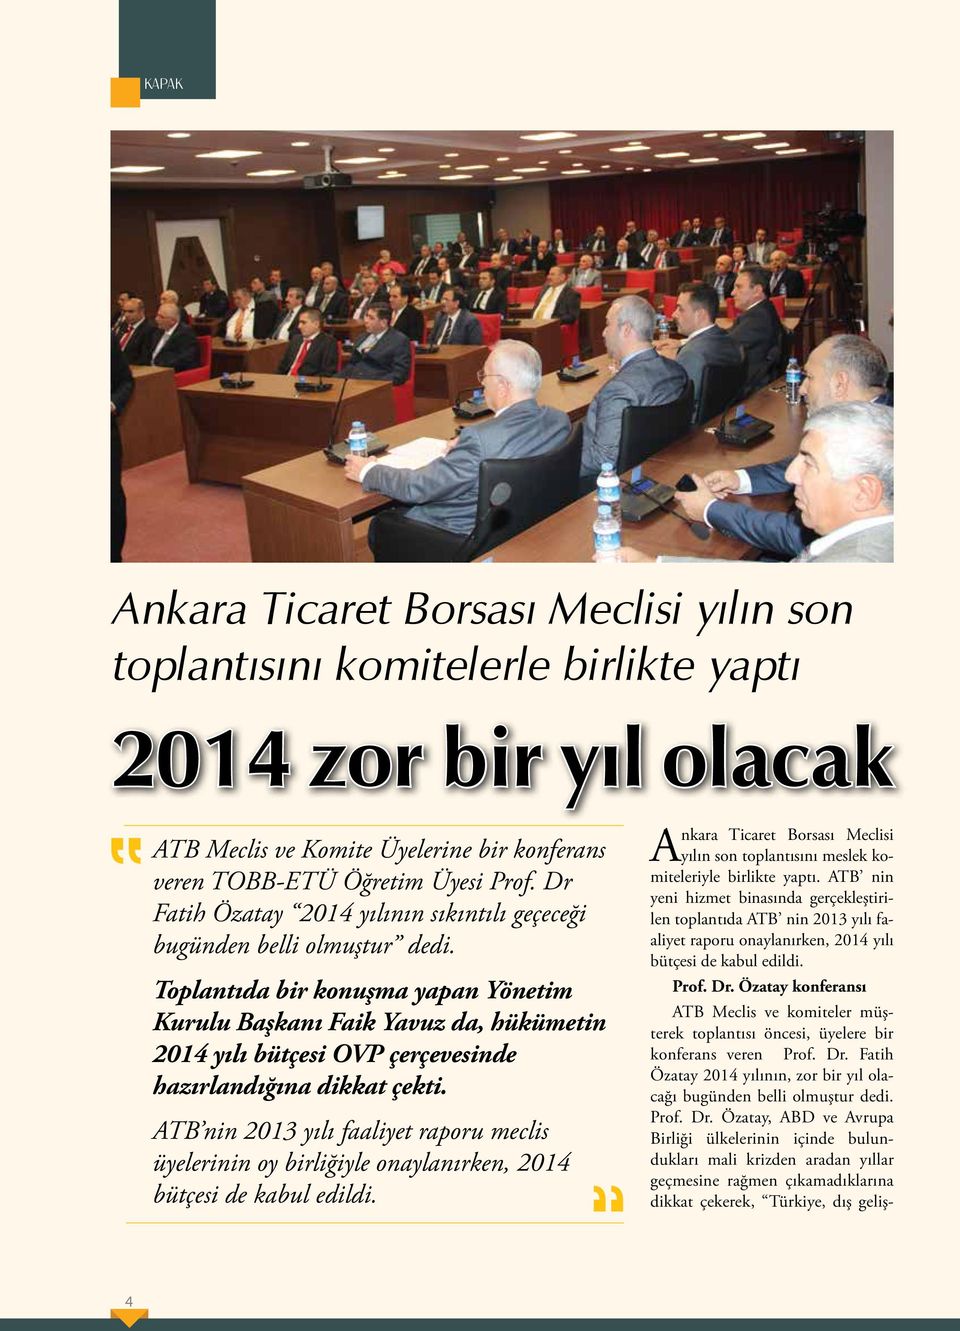 Toplantıda bir konuşma yapan Yönetim Kurulu Başkanı Faik Yavuz da, hükümetin 2014 yılı bütçesi OVP çerçevesinde hazırlandığına dikkat çekti.